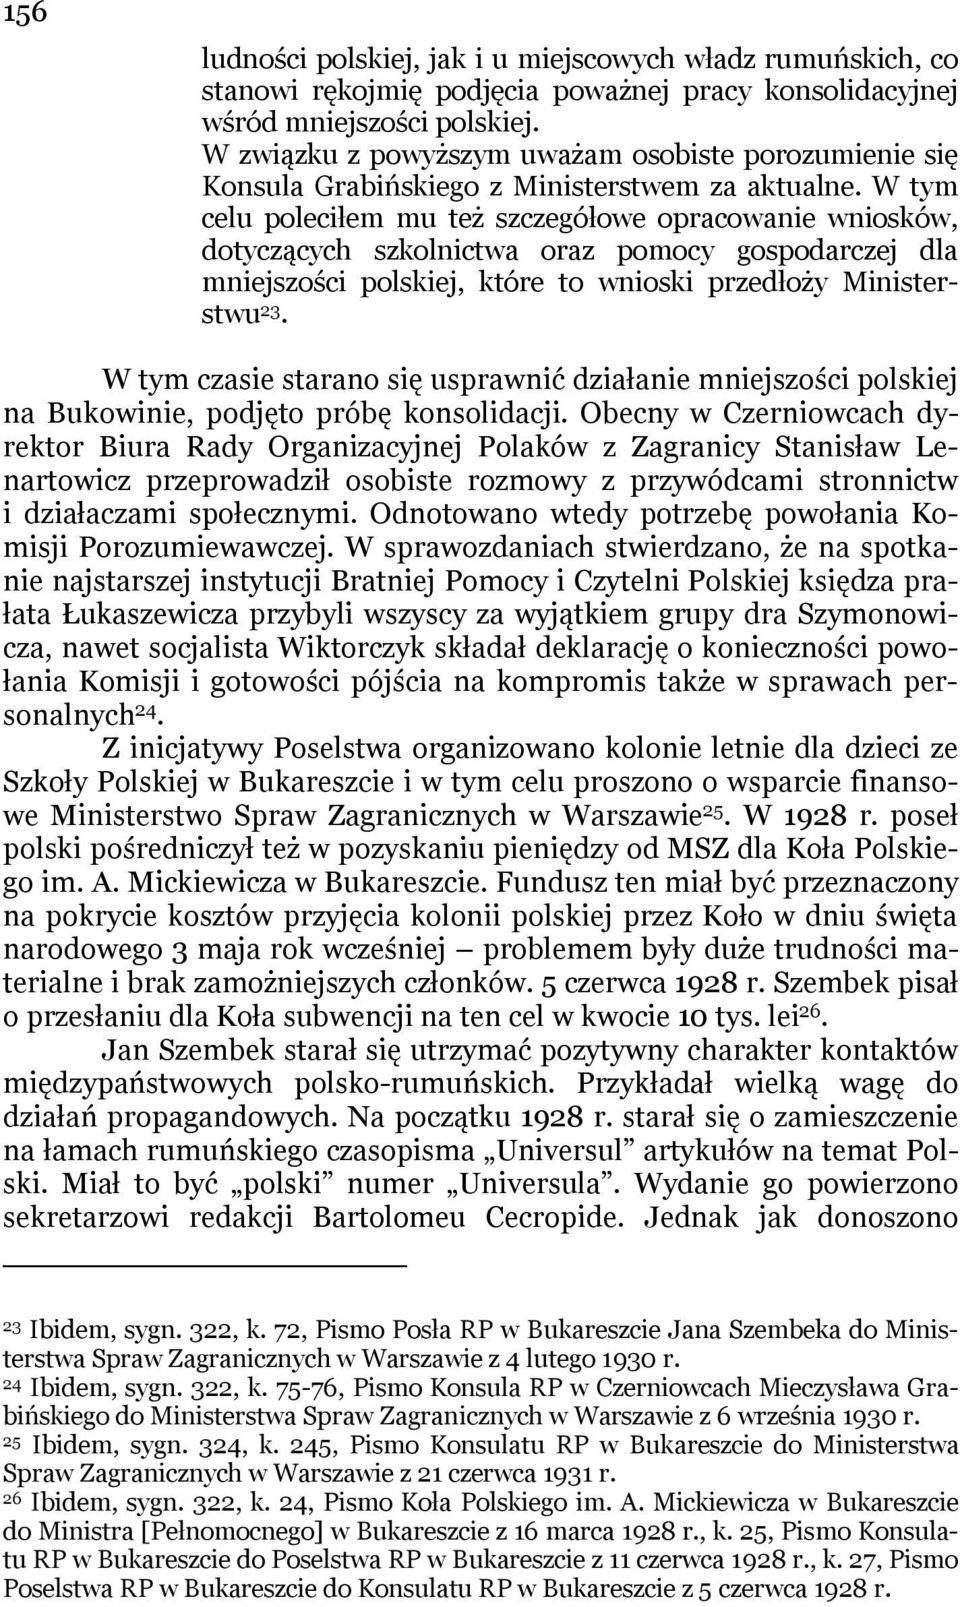 W tym celu poleciłem mu też szczegółowe opracowanie wniosków, dotyczących szkolnictwa oraz pomocy gospodarczej dla mniejszości polskiej, które to wnioski przedłoży Ministerstwu 23.